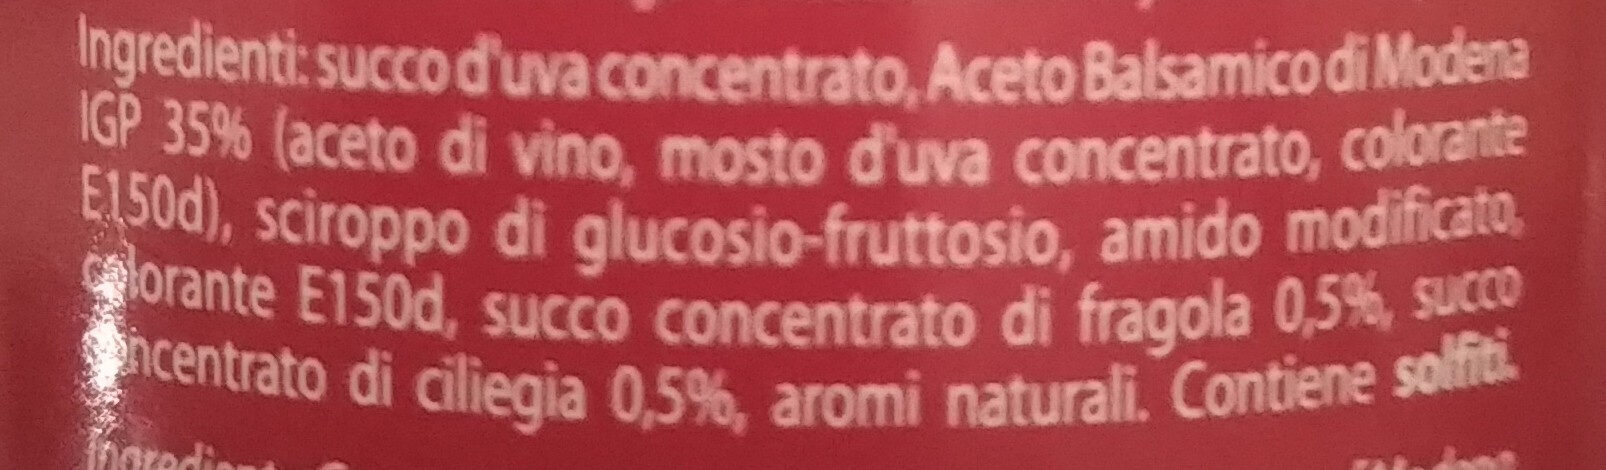 Glassa all'"aceto balsamico di Modena IGP" con ciliegia e fragola - Ingredients - it